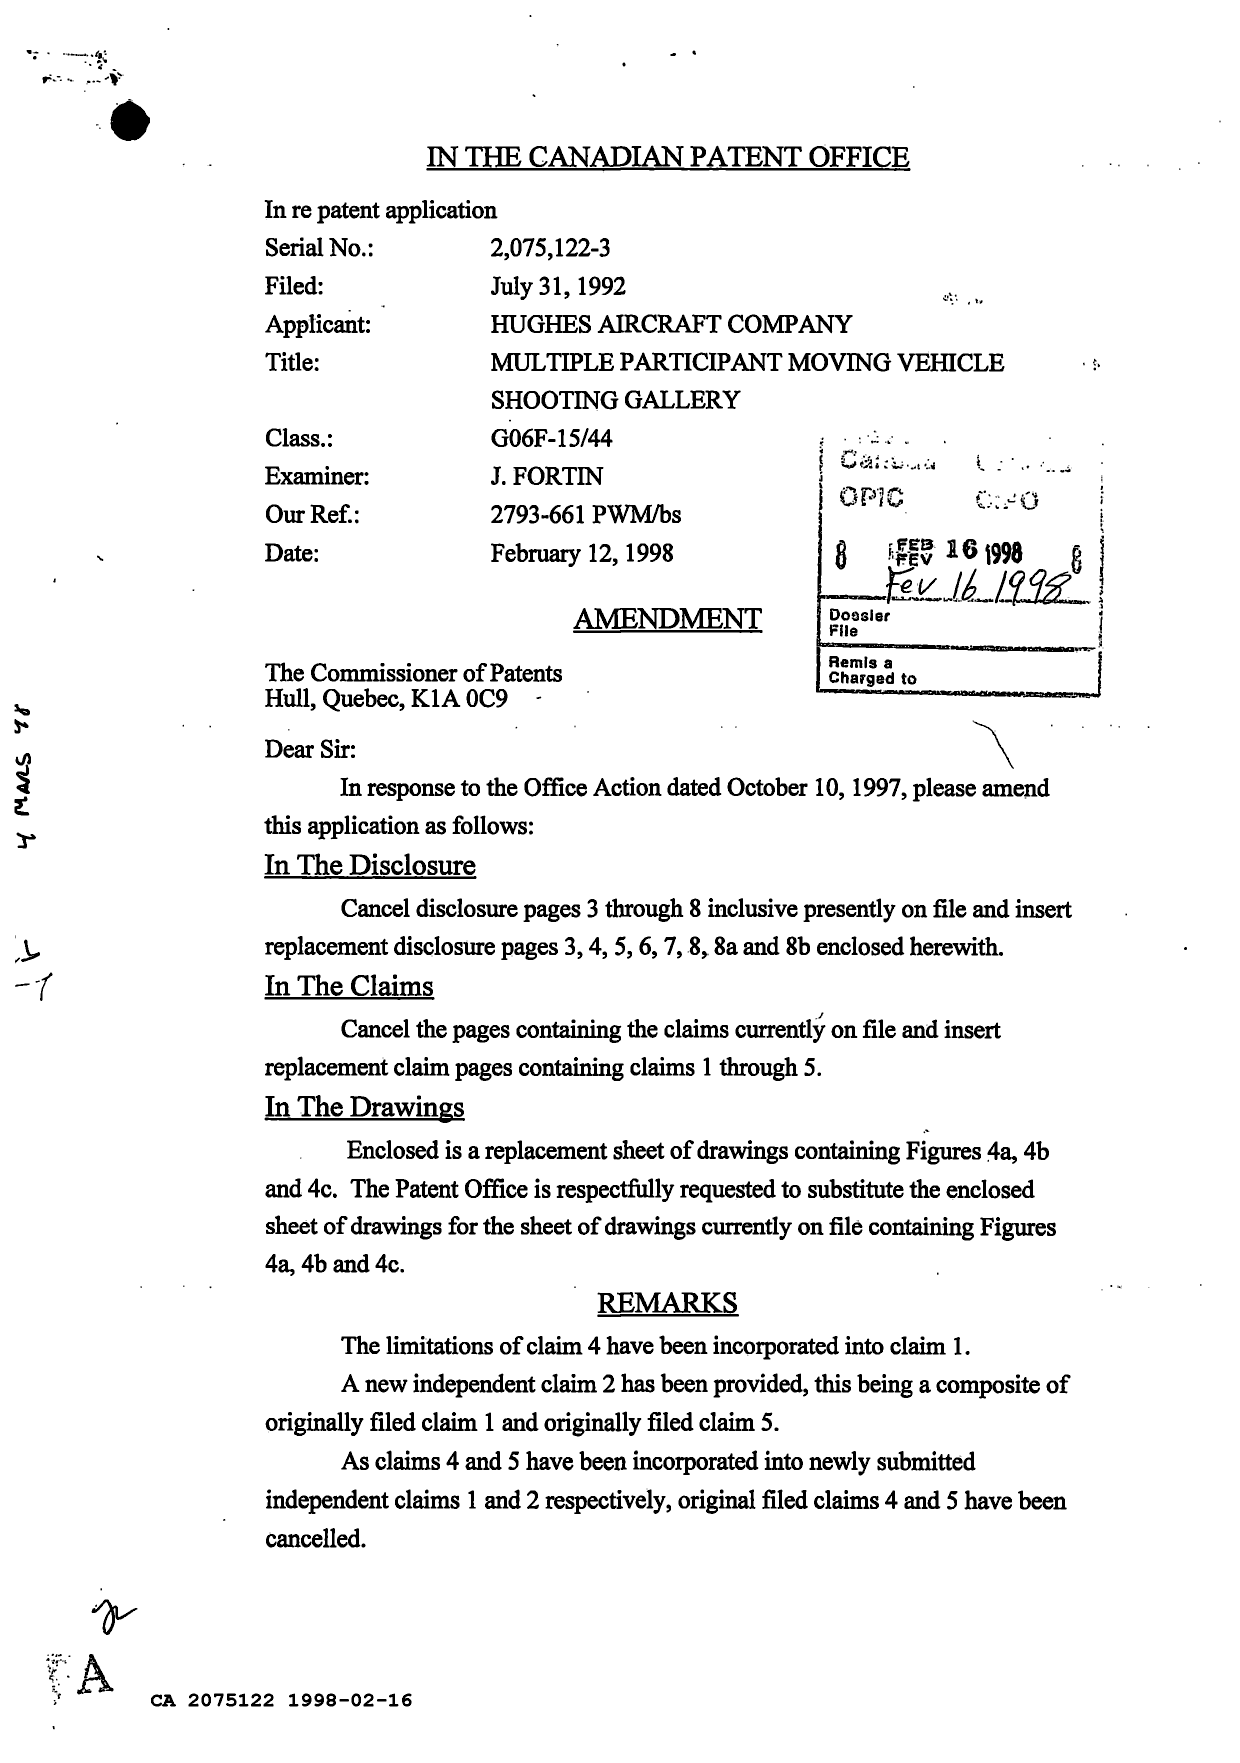 Document de brevet canadien 2075122. Correspondance de la poursuite 19980216. Image 1 de 3